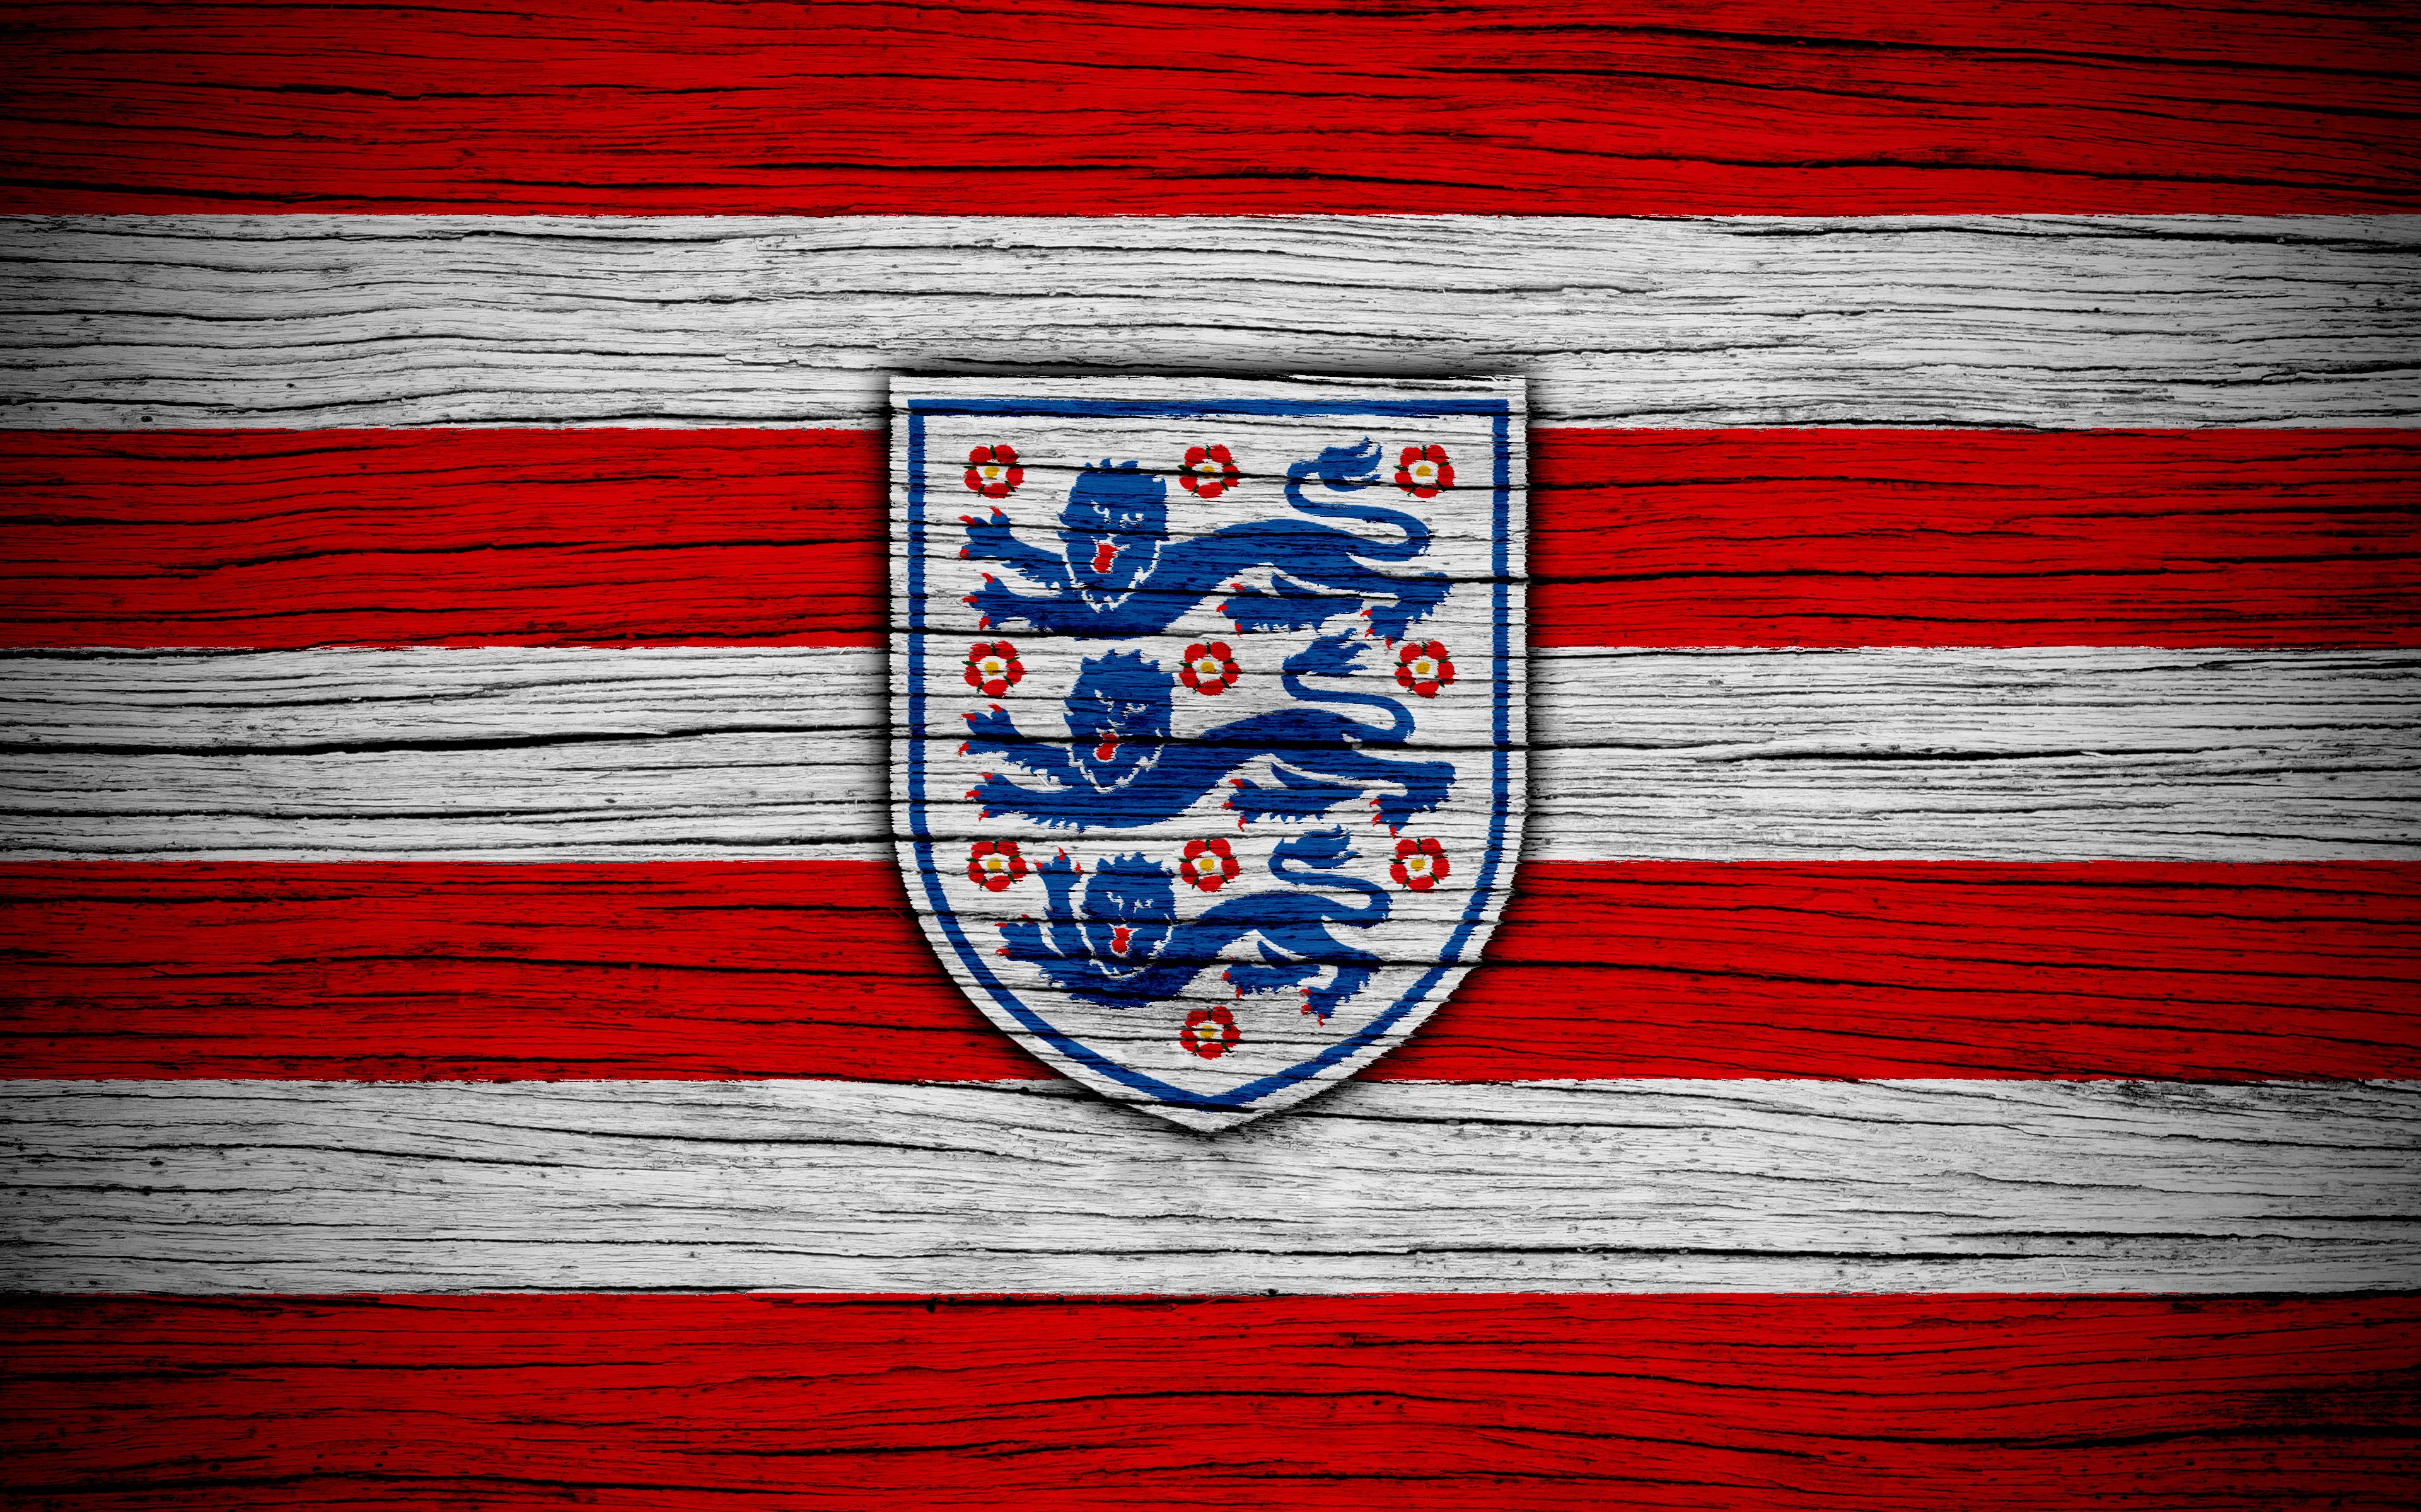 Sports England National Football Team 4k Ultra HD Wallpaper